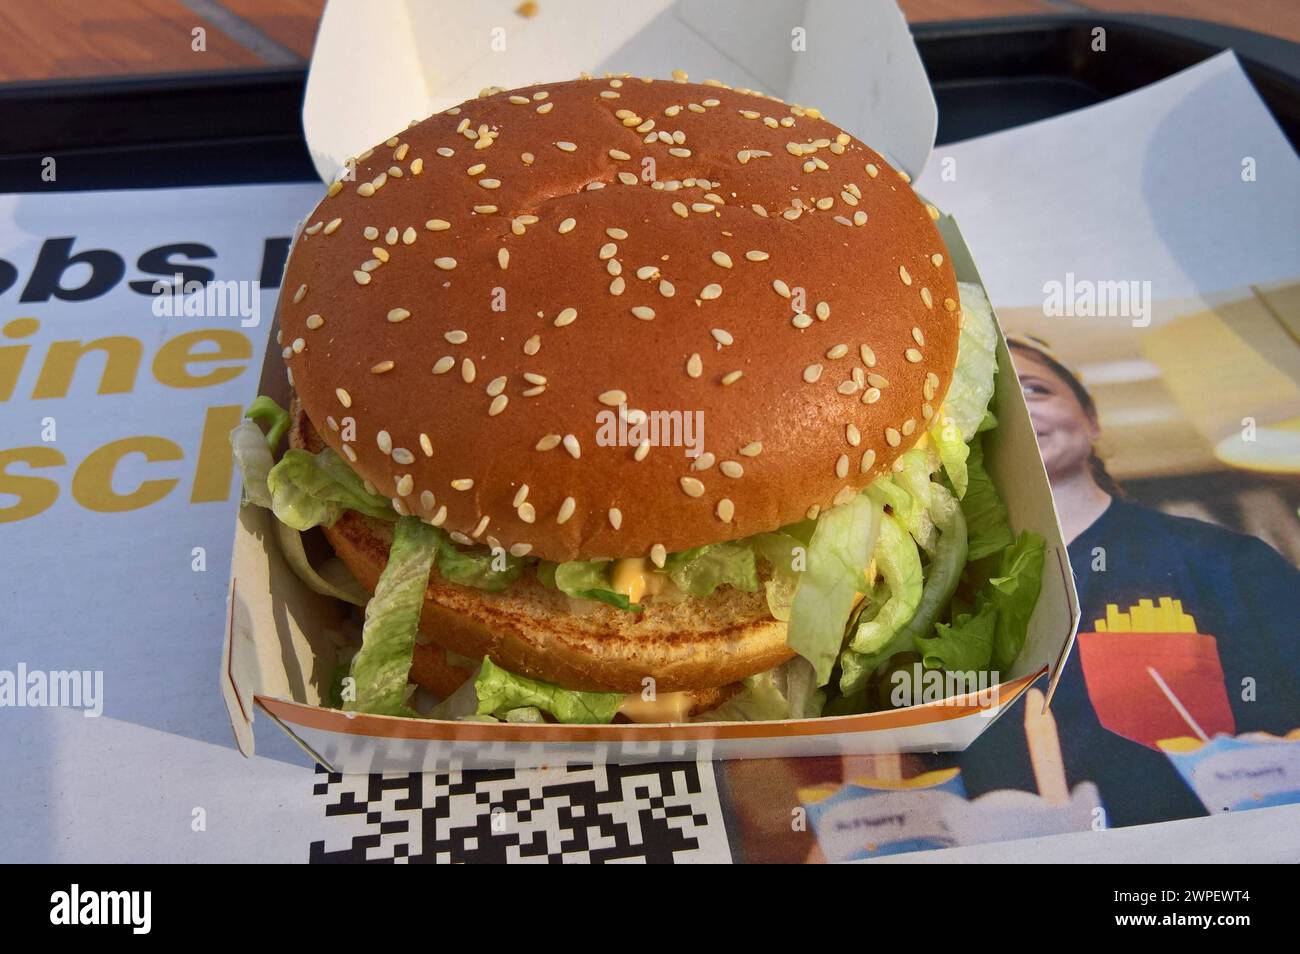 Der Big Mac, in Deutschland früher auch als Big Mäc bezeichnet, ist eine doppelstöckige Cheeseburger-Variante des Fast-Food-Konzerns McDonald. Die McDonalds Corporation ist ein US-amerikanischer Betreiber und Franchisegeber von weltweit vertretenen Schnellrestaurants und der umsatzstärkste Fastfood-Konzern der Welt *** The Big Mac, formerly known as the Big Mäc in Germany, is a double-decker cheeseburger variant of the McDonalds fast food group The McDonalds Corporation is an American operator and franchisor of fast food restaurants worldwide and the worlds highest-selling fast food group Stock Photo